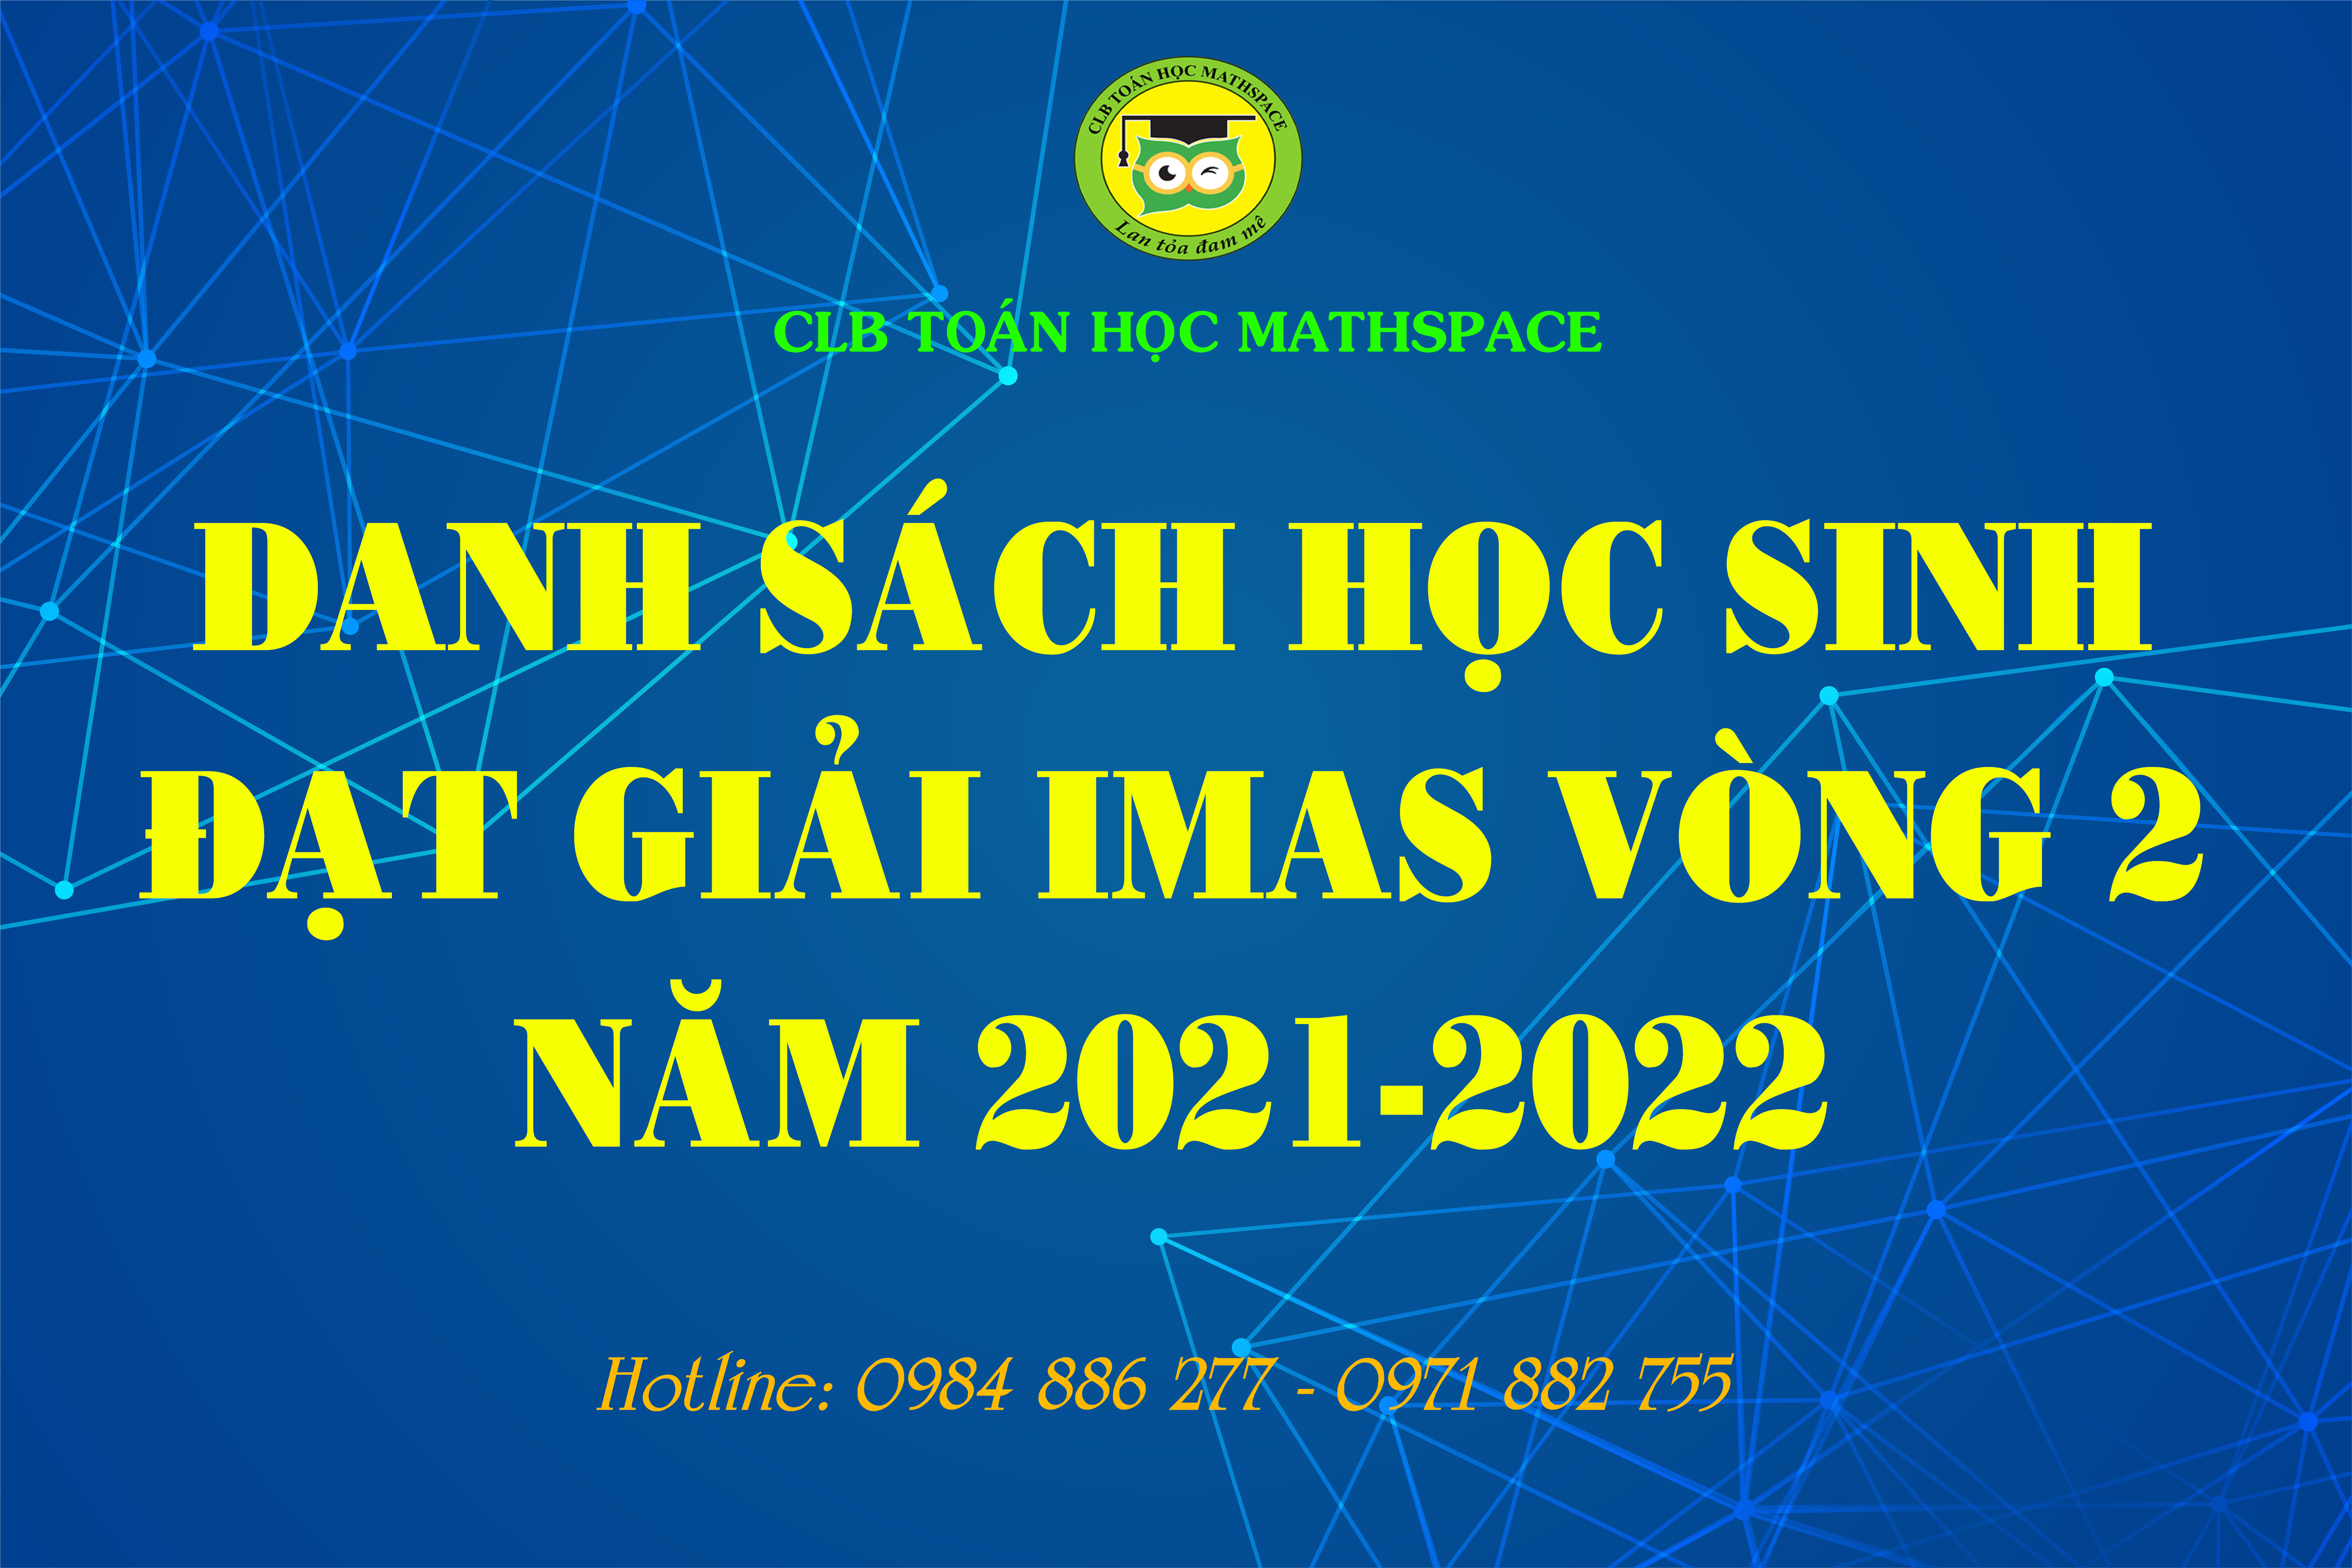 DANH SÁCH HỌC SINH ĐẠT GIẢI VÒNG 2 IMAS NĂM 2021-2022